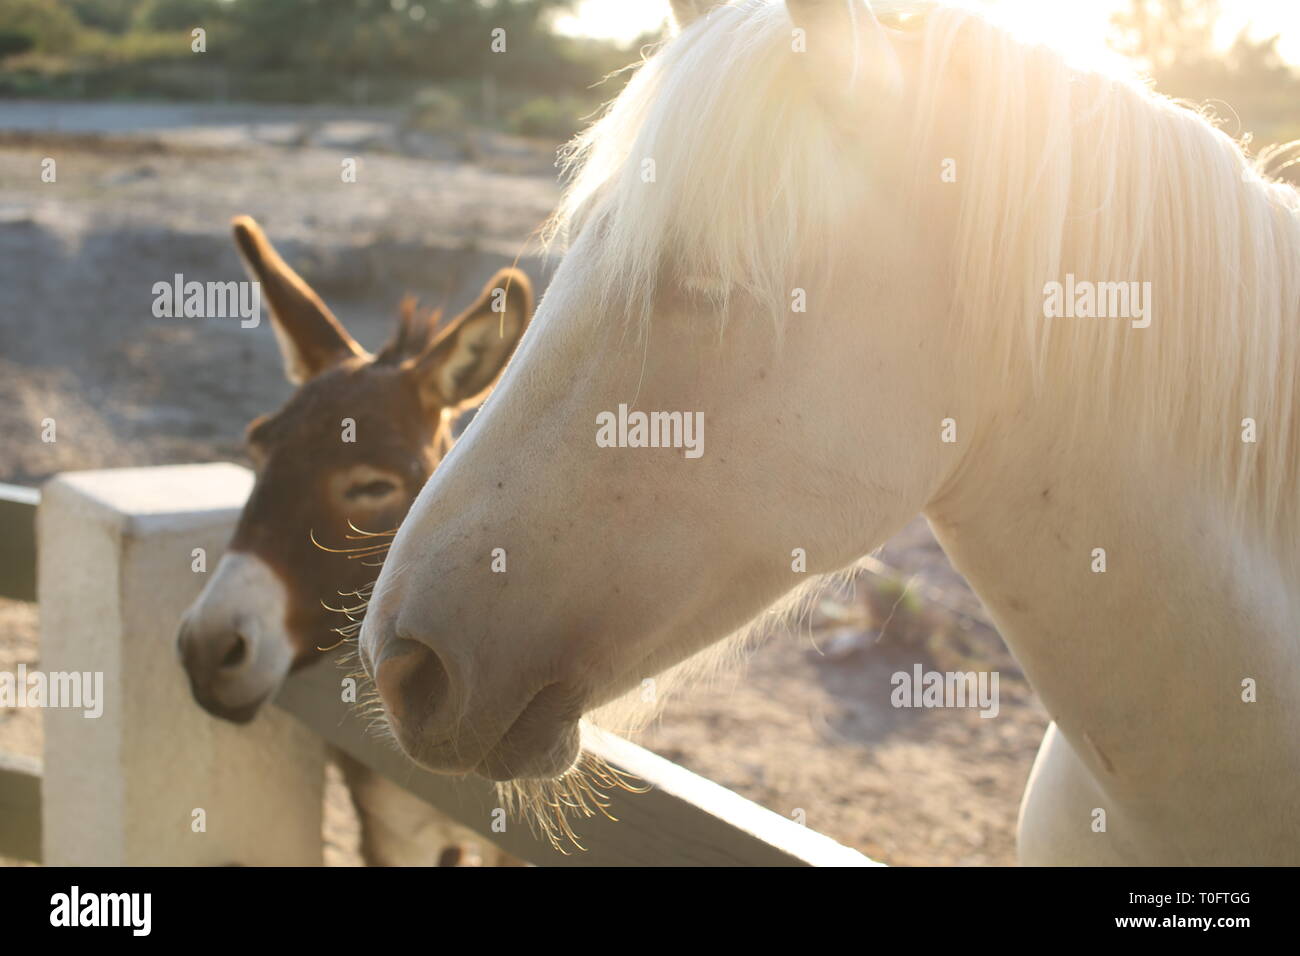 Hermoso caballo blanco con larga melena marrón con un joven amigo Asno esperando en una valla en la puesta del sol Foto de stock